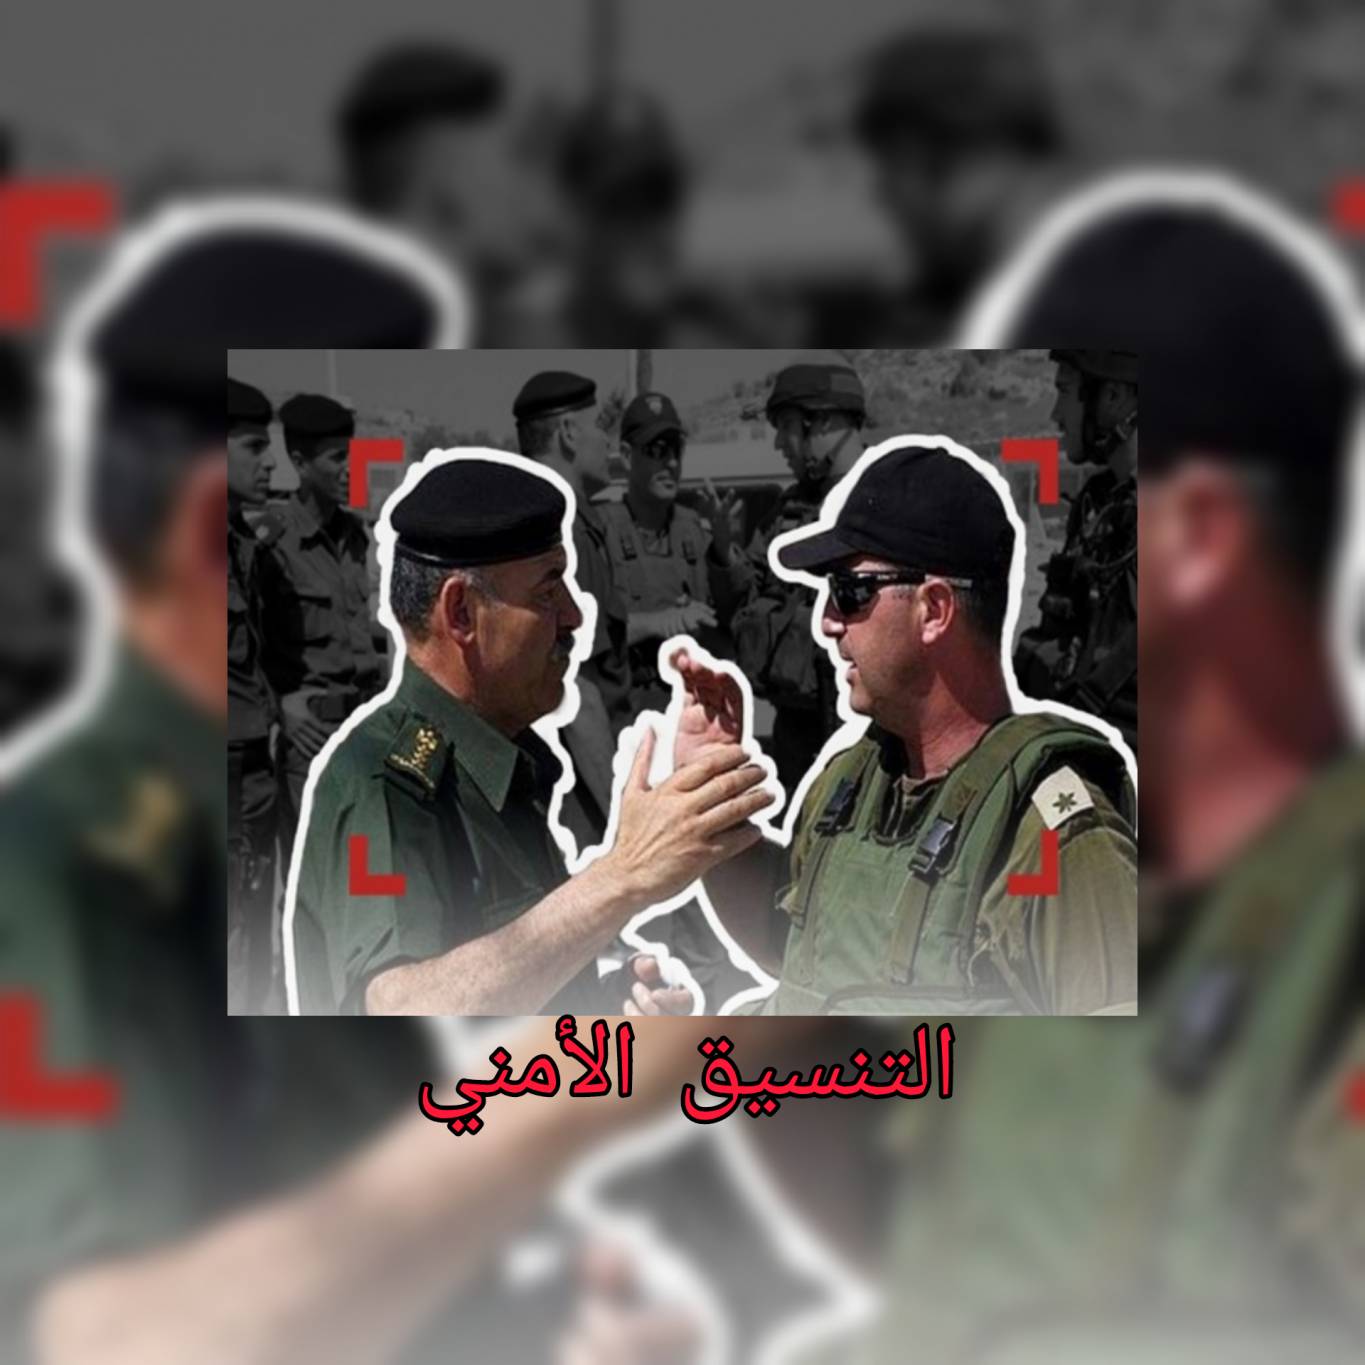 جبهة الخلاص الوطني الفلسطيني : ندين بشدة  الموقف المخزي والمعيب لاجهزة التنسيق الأمني